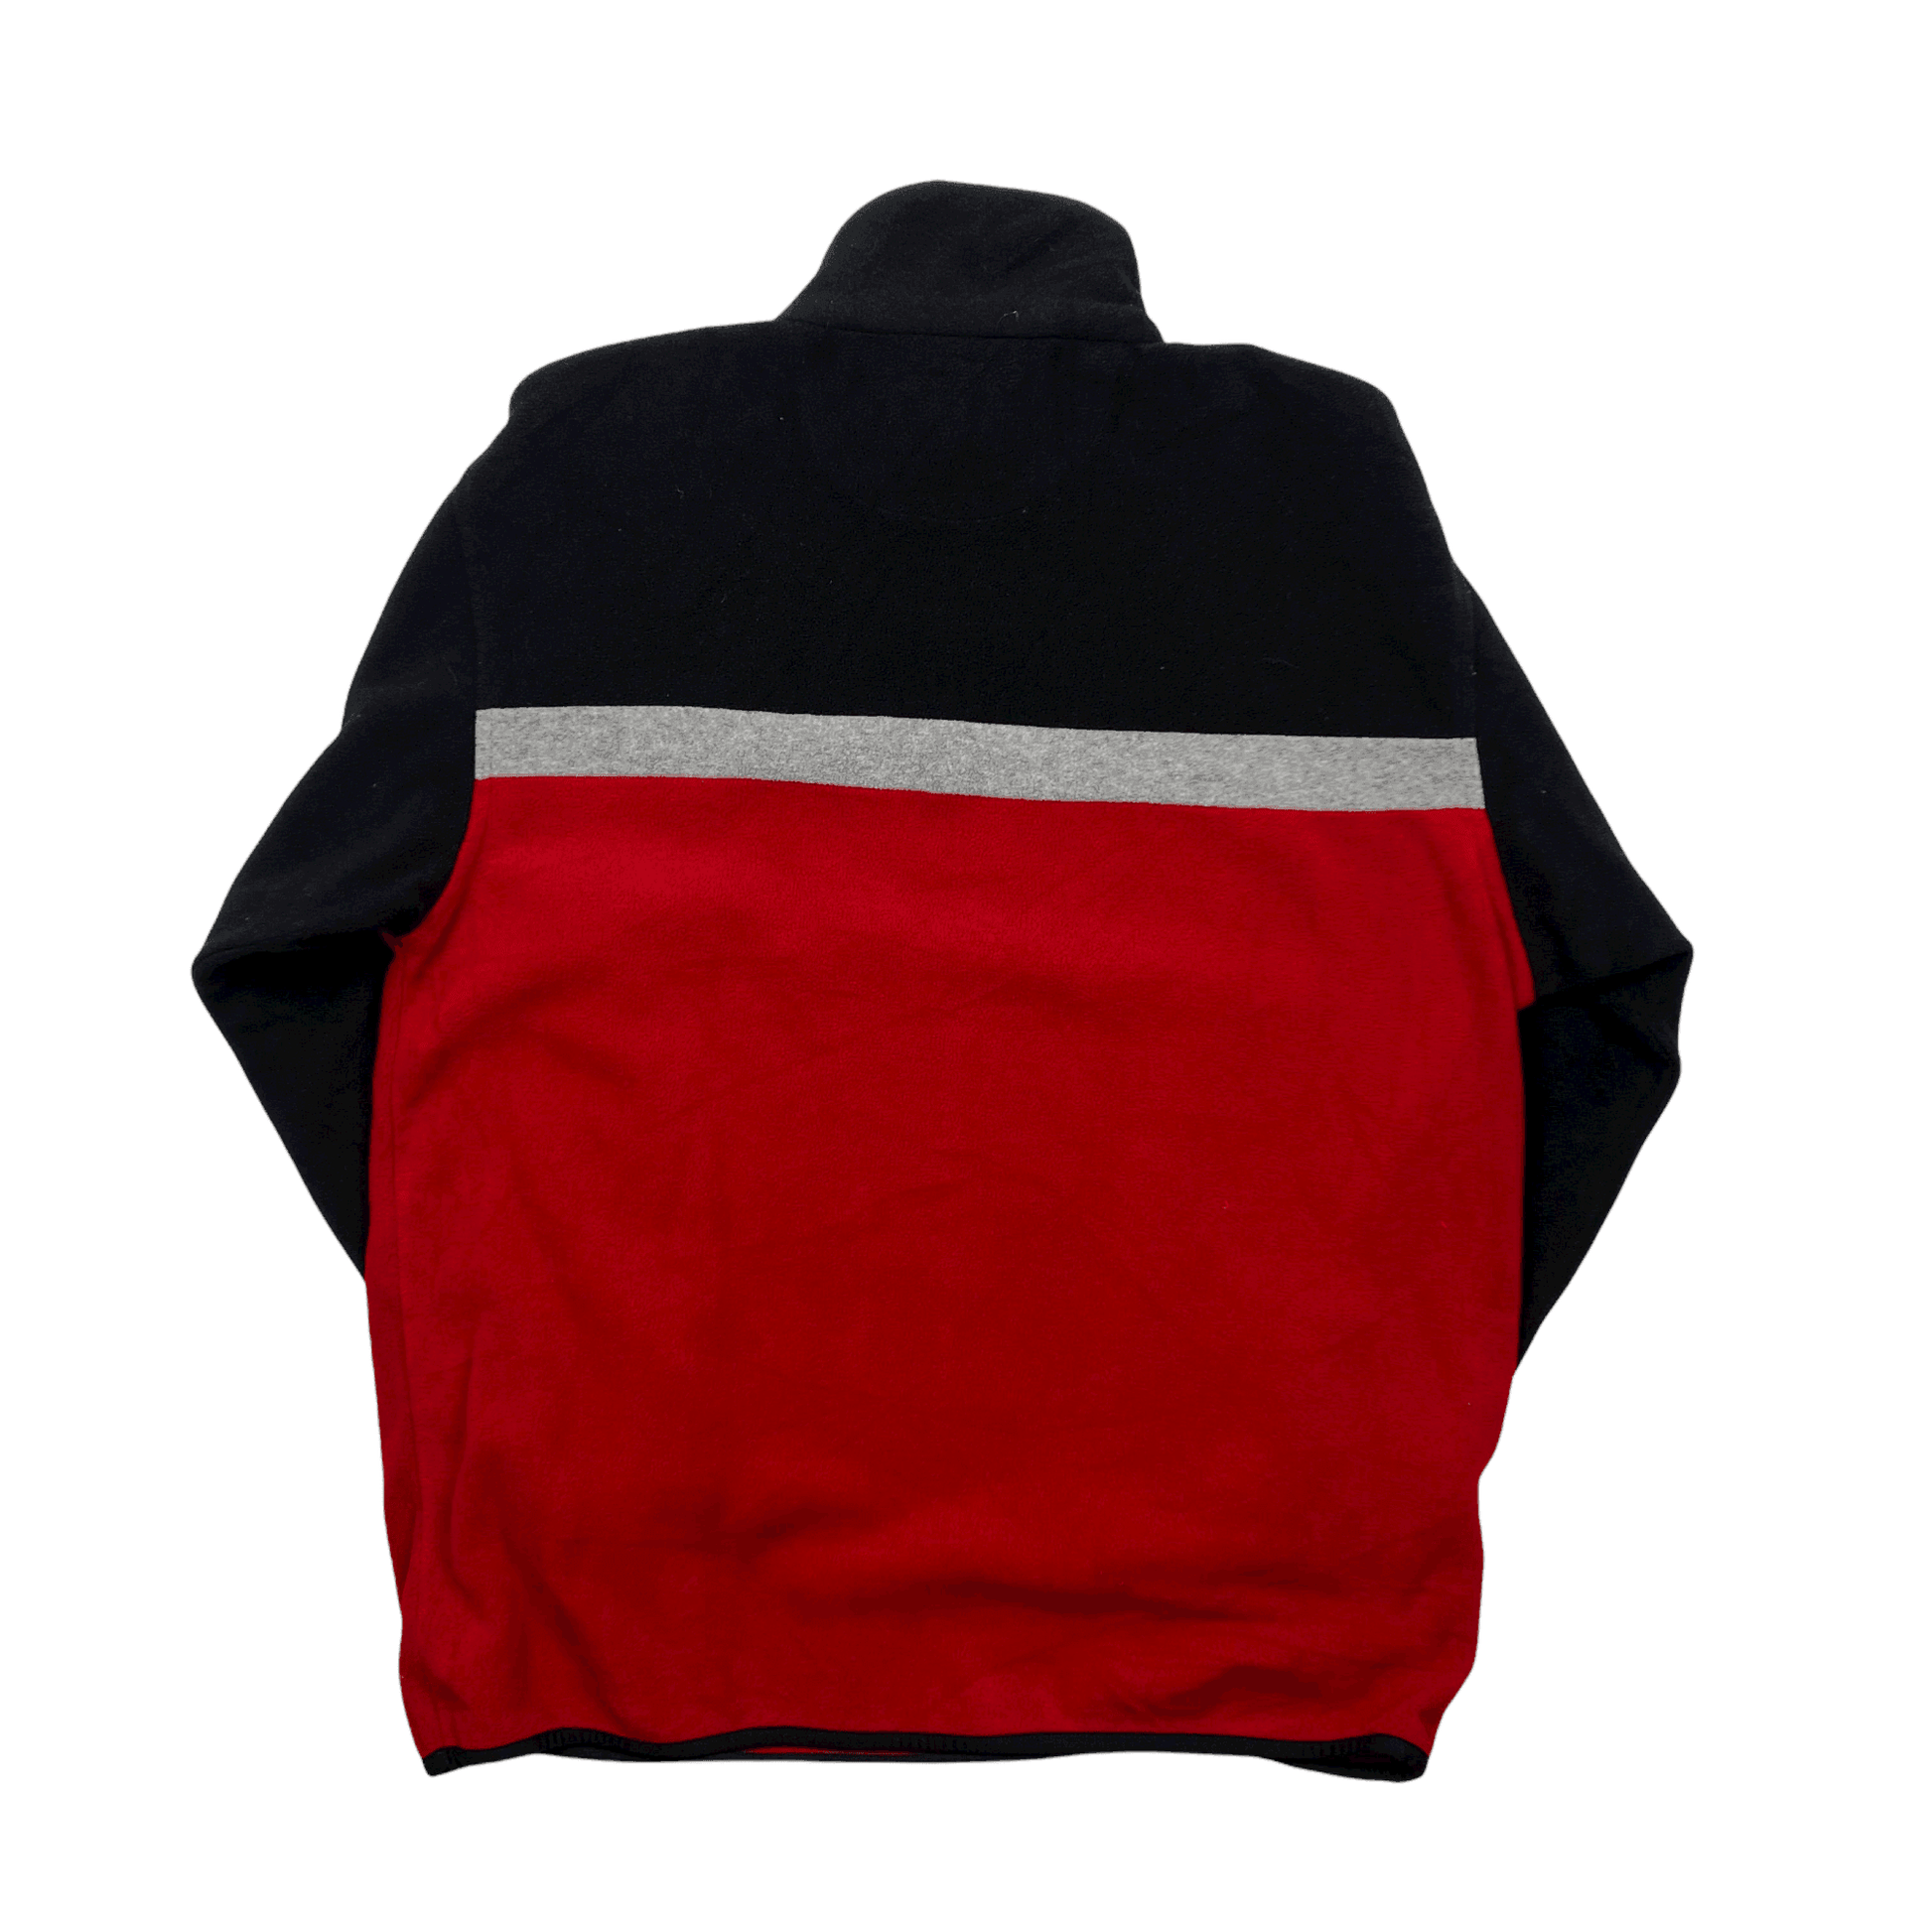 Vintage 90s Red Ralph Lauren Polo Sport Quarter Zip Fleece - Large